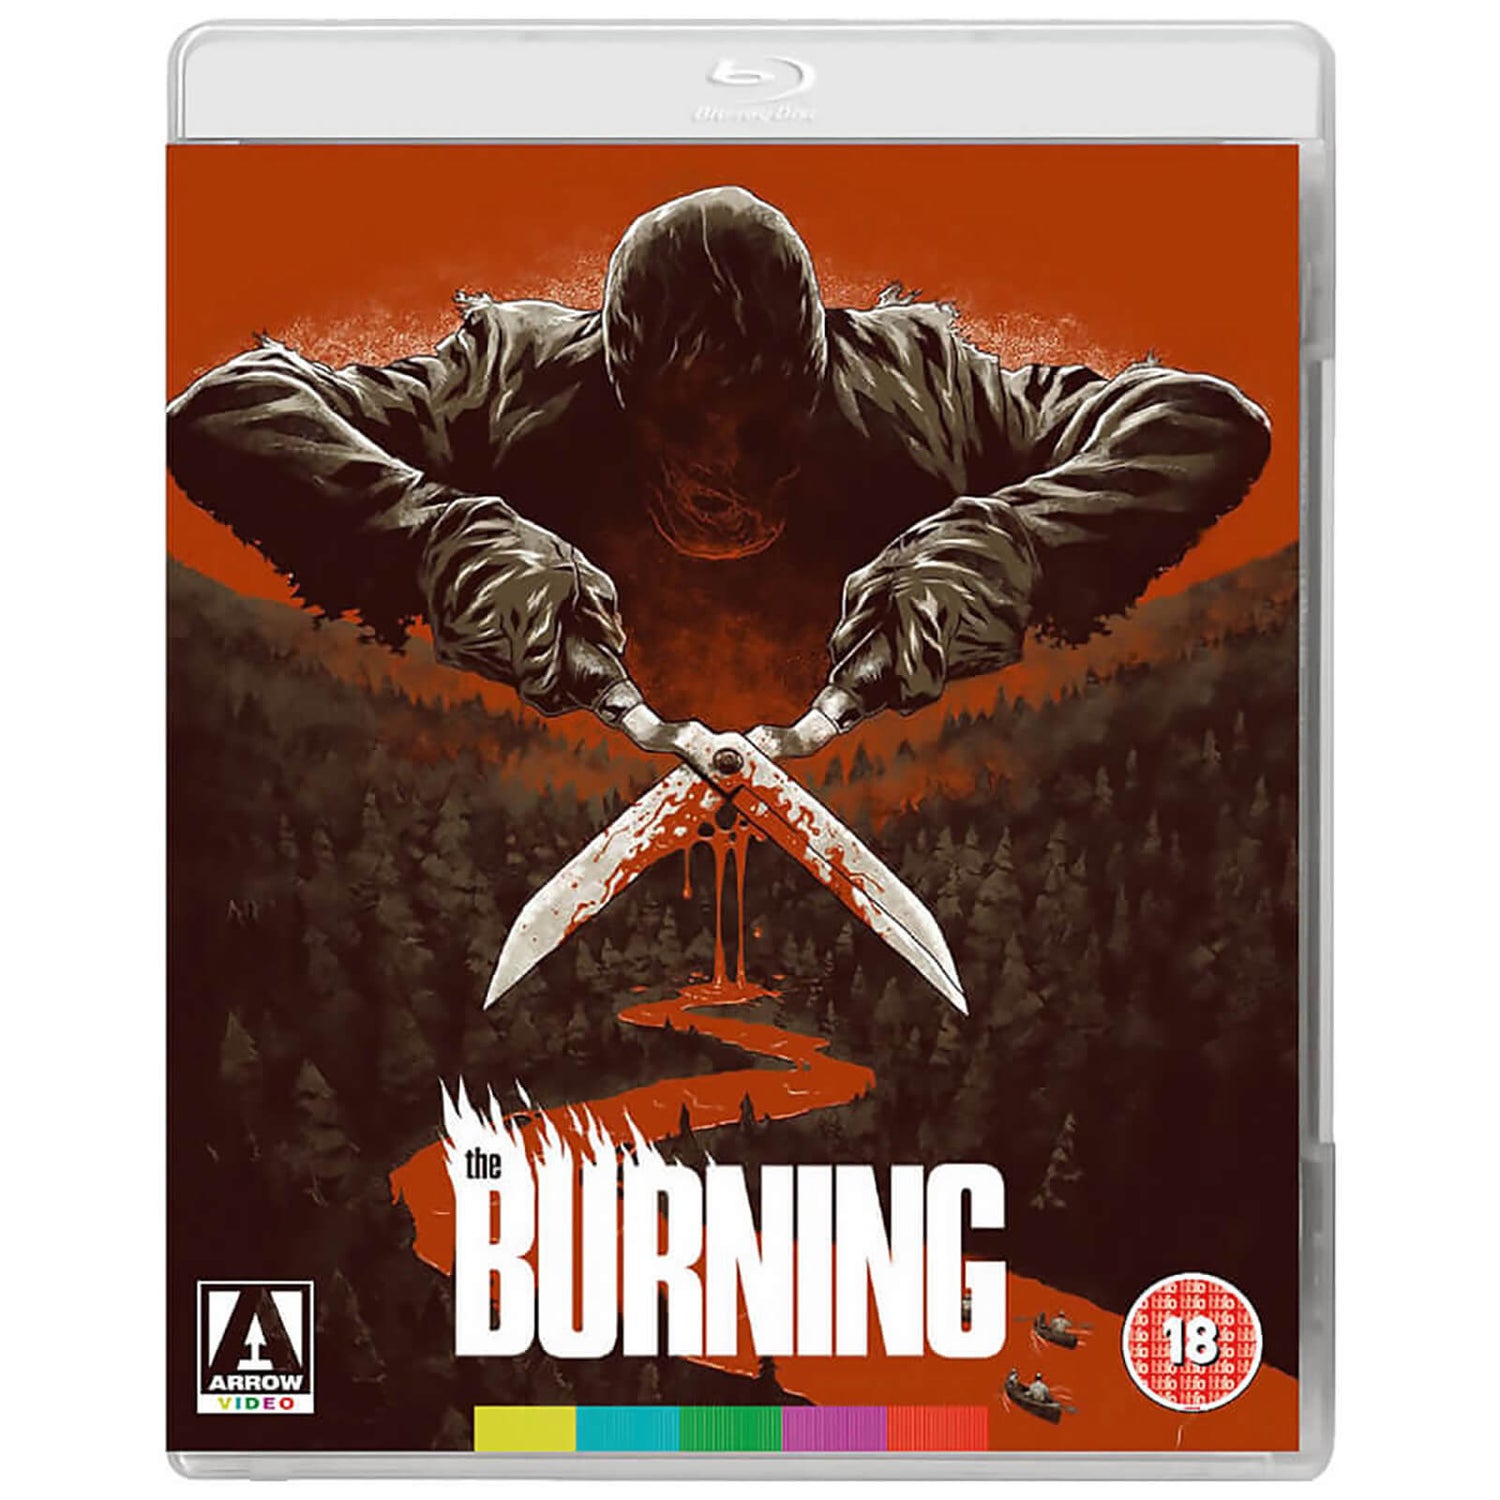 The Burning Blu-ray